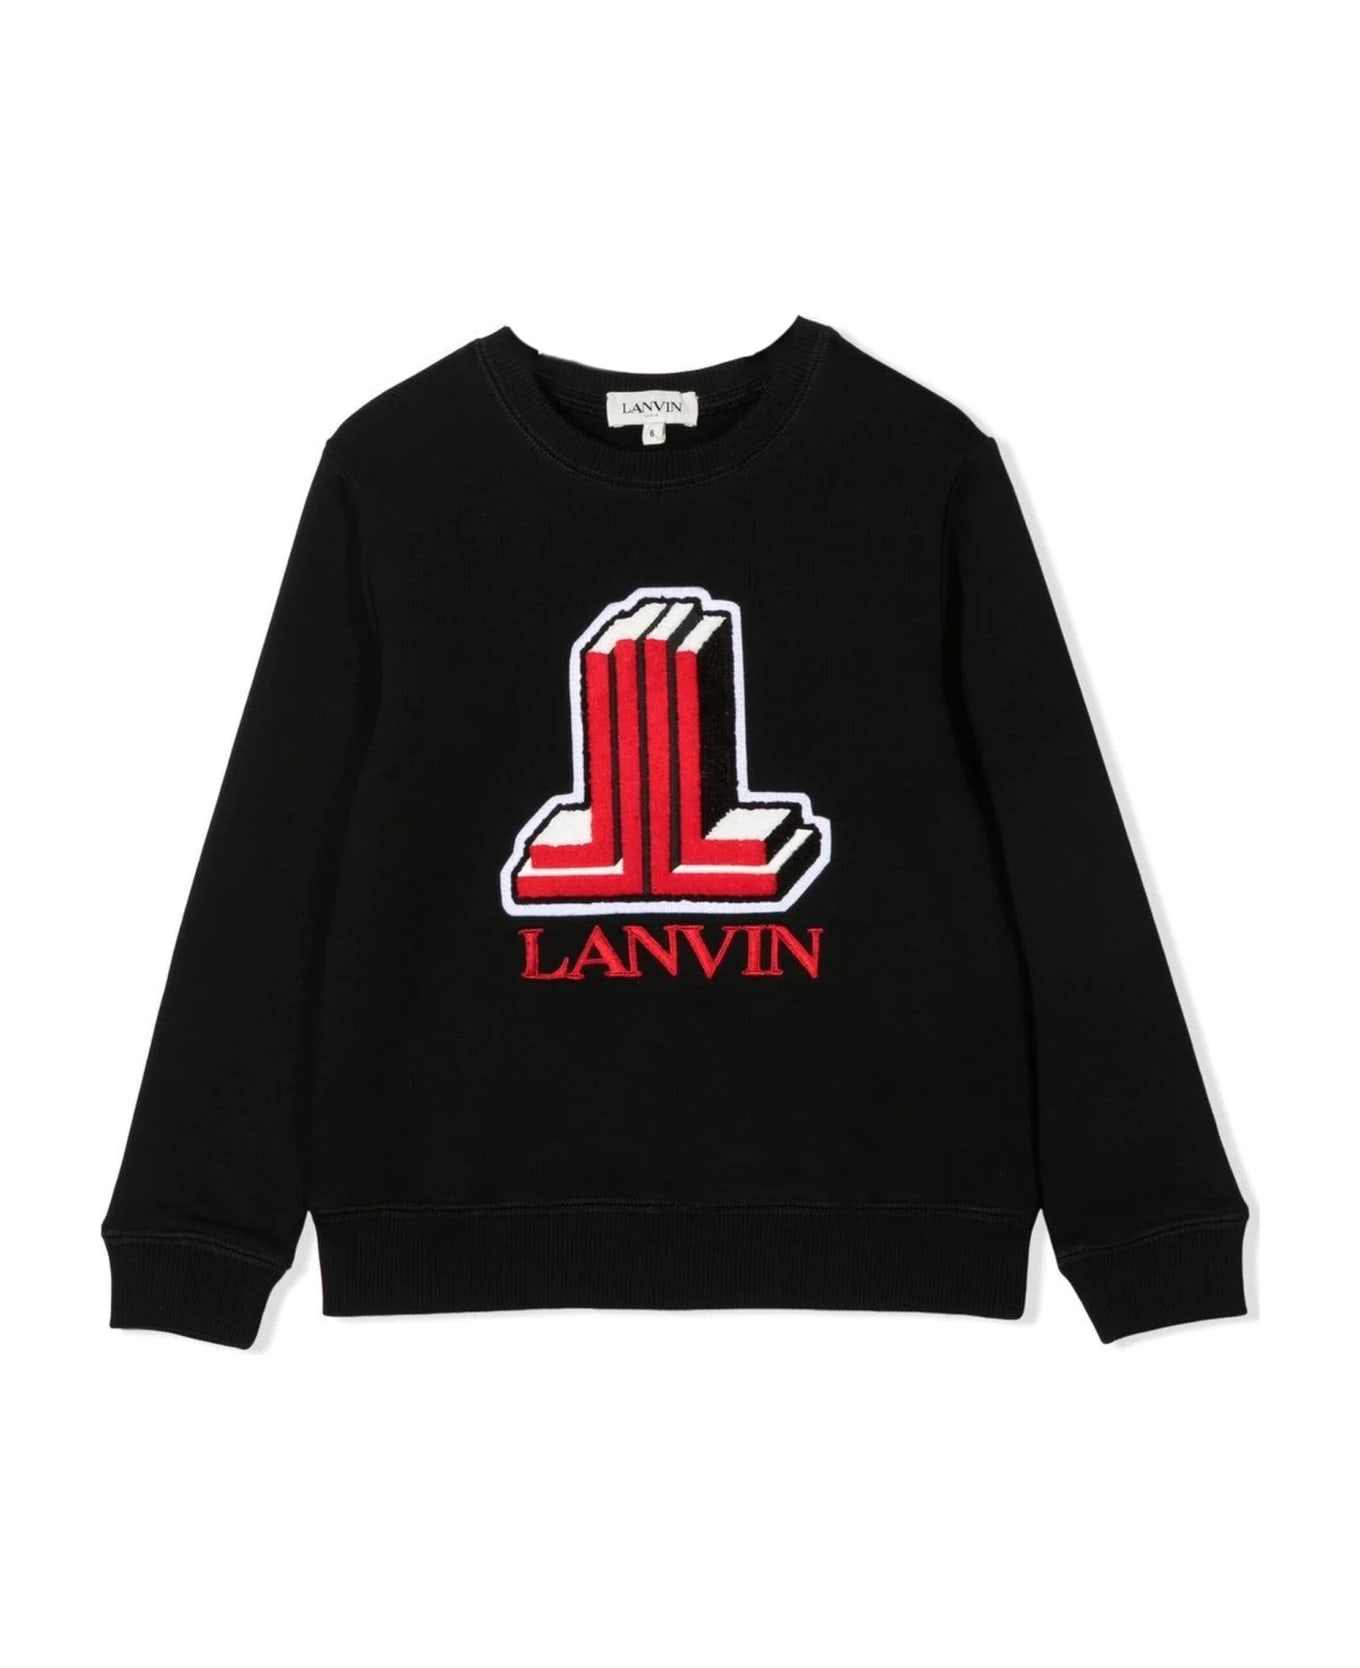 Lanvin Black Cotton Sweatshirt - Nero